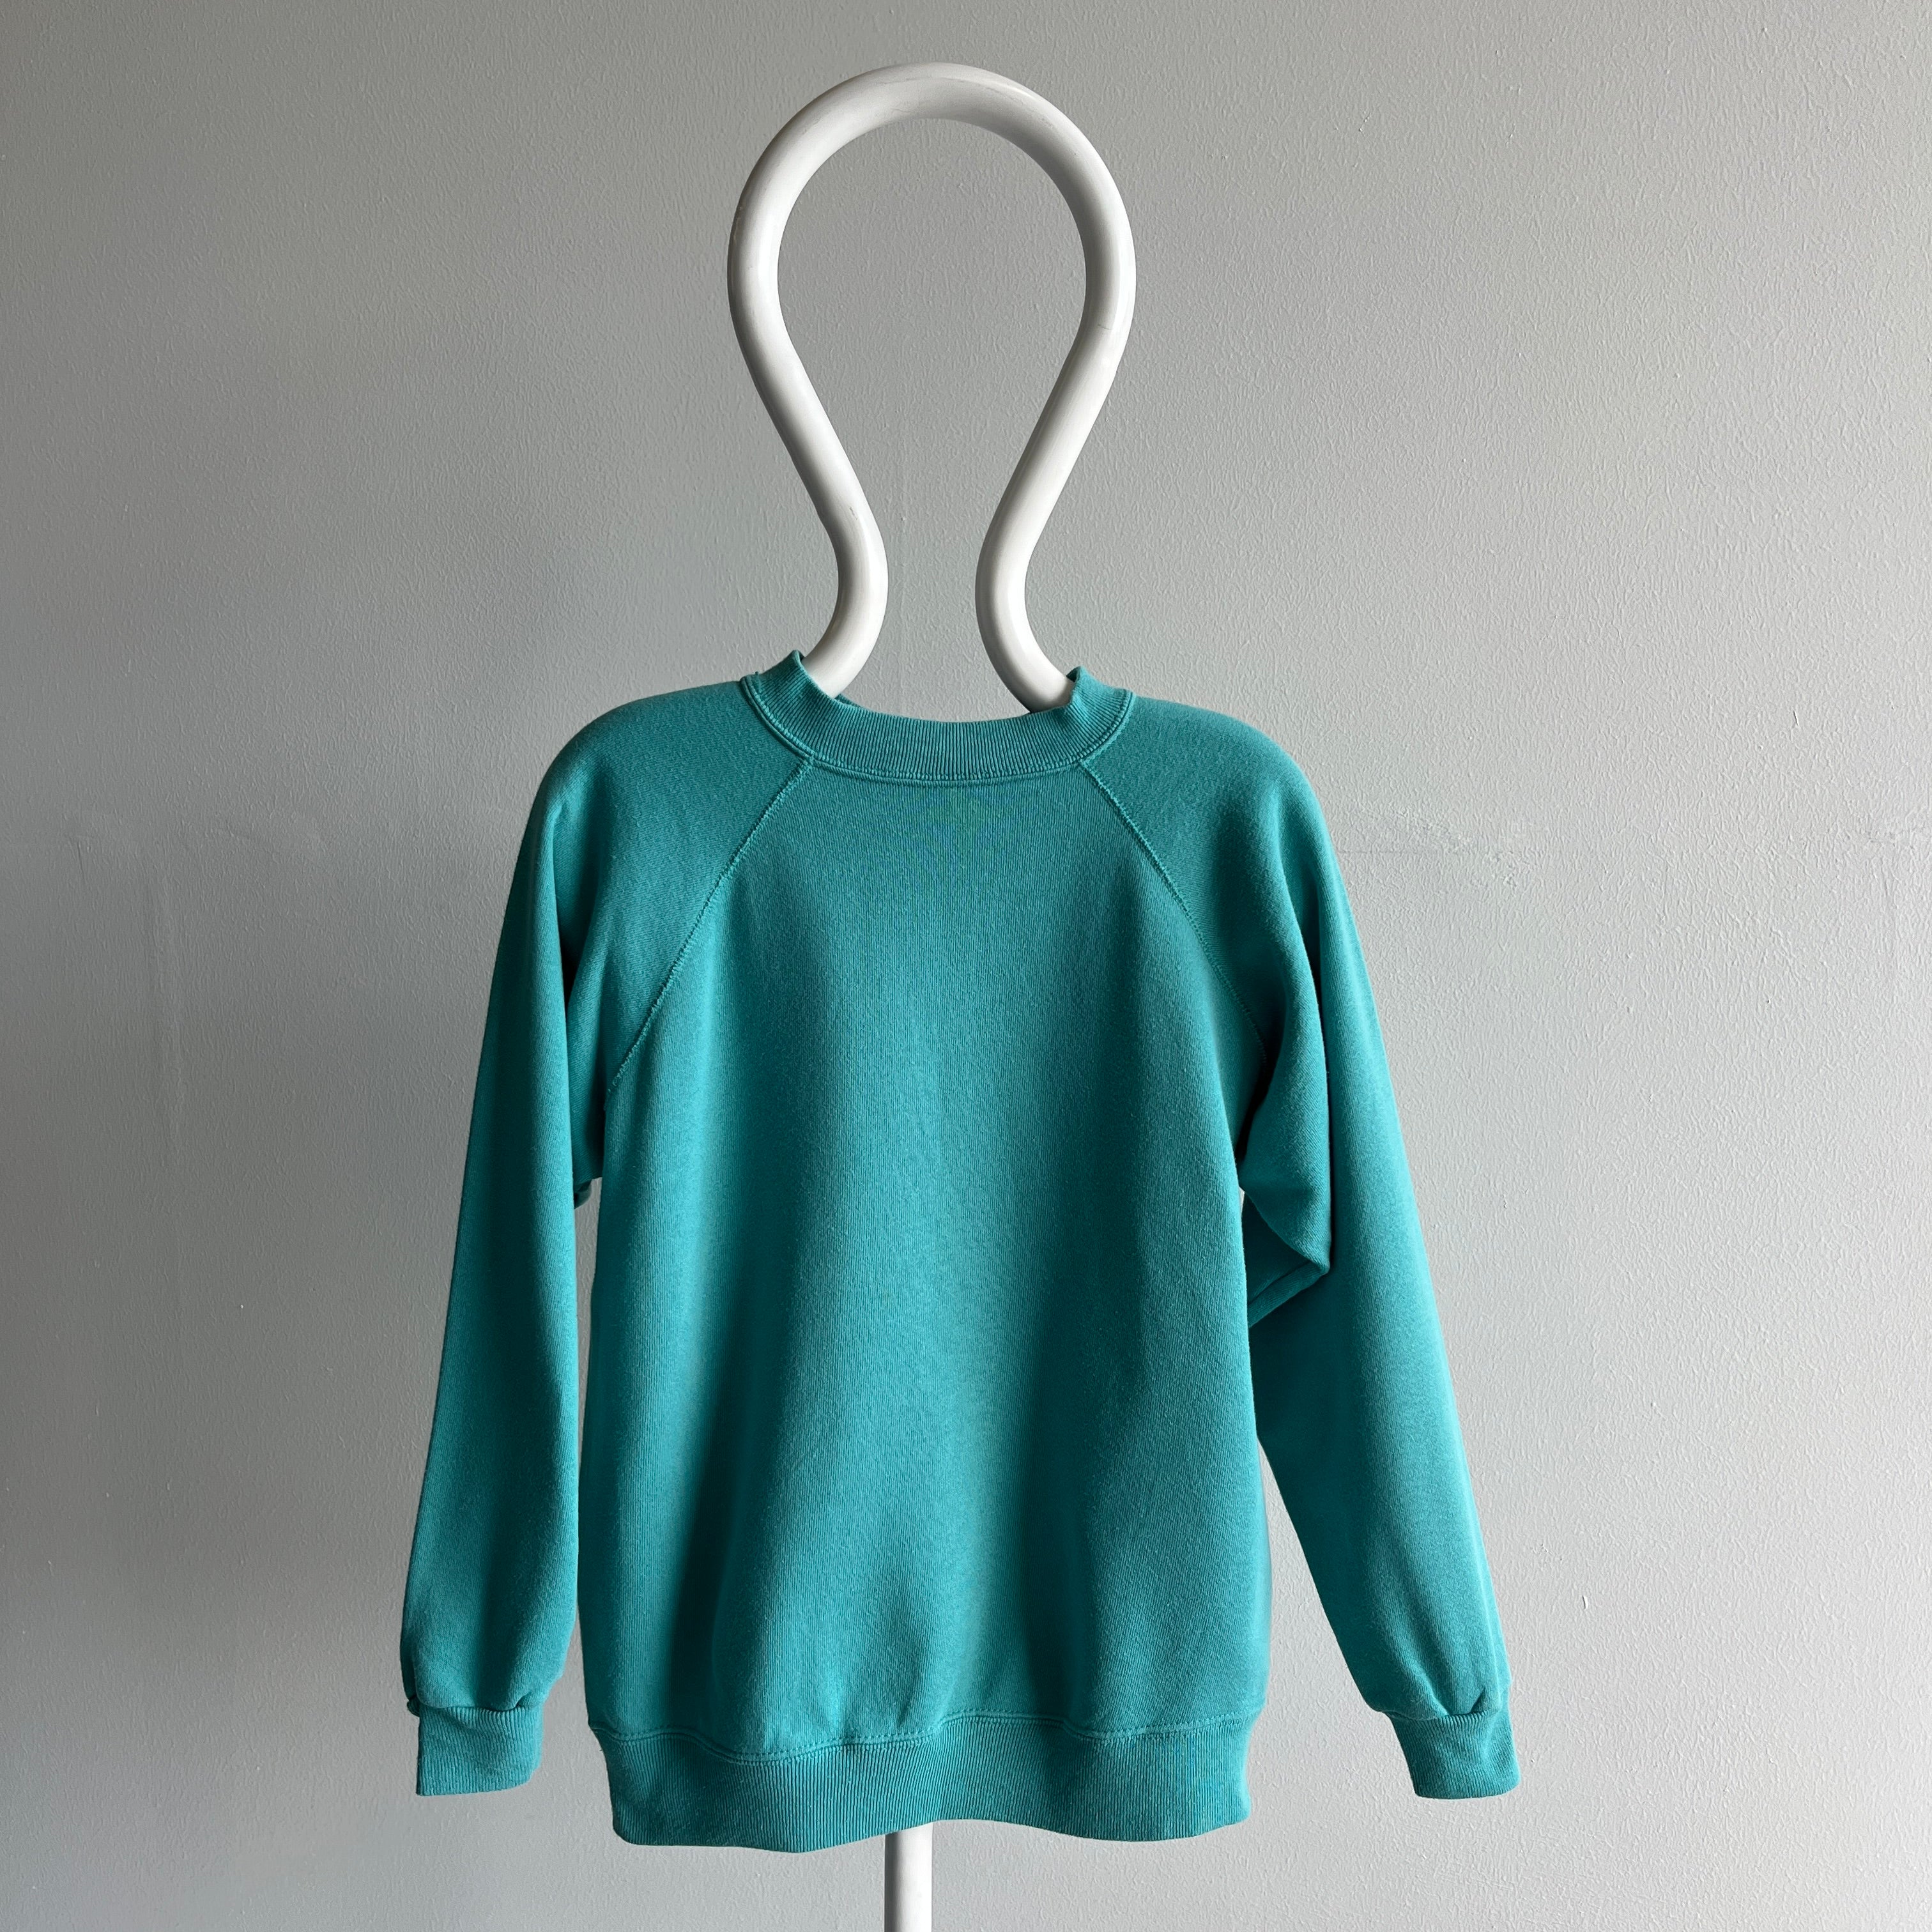 1980s Jade Sea Foam Green/Blue Blank Sweatshirt